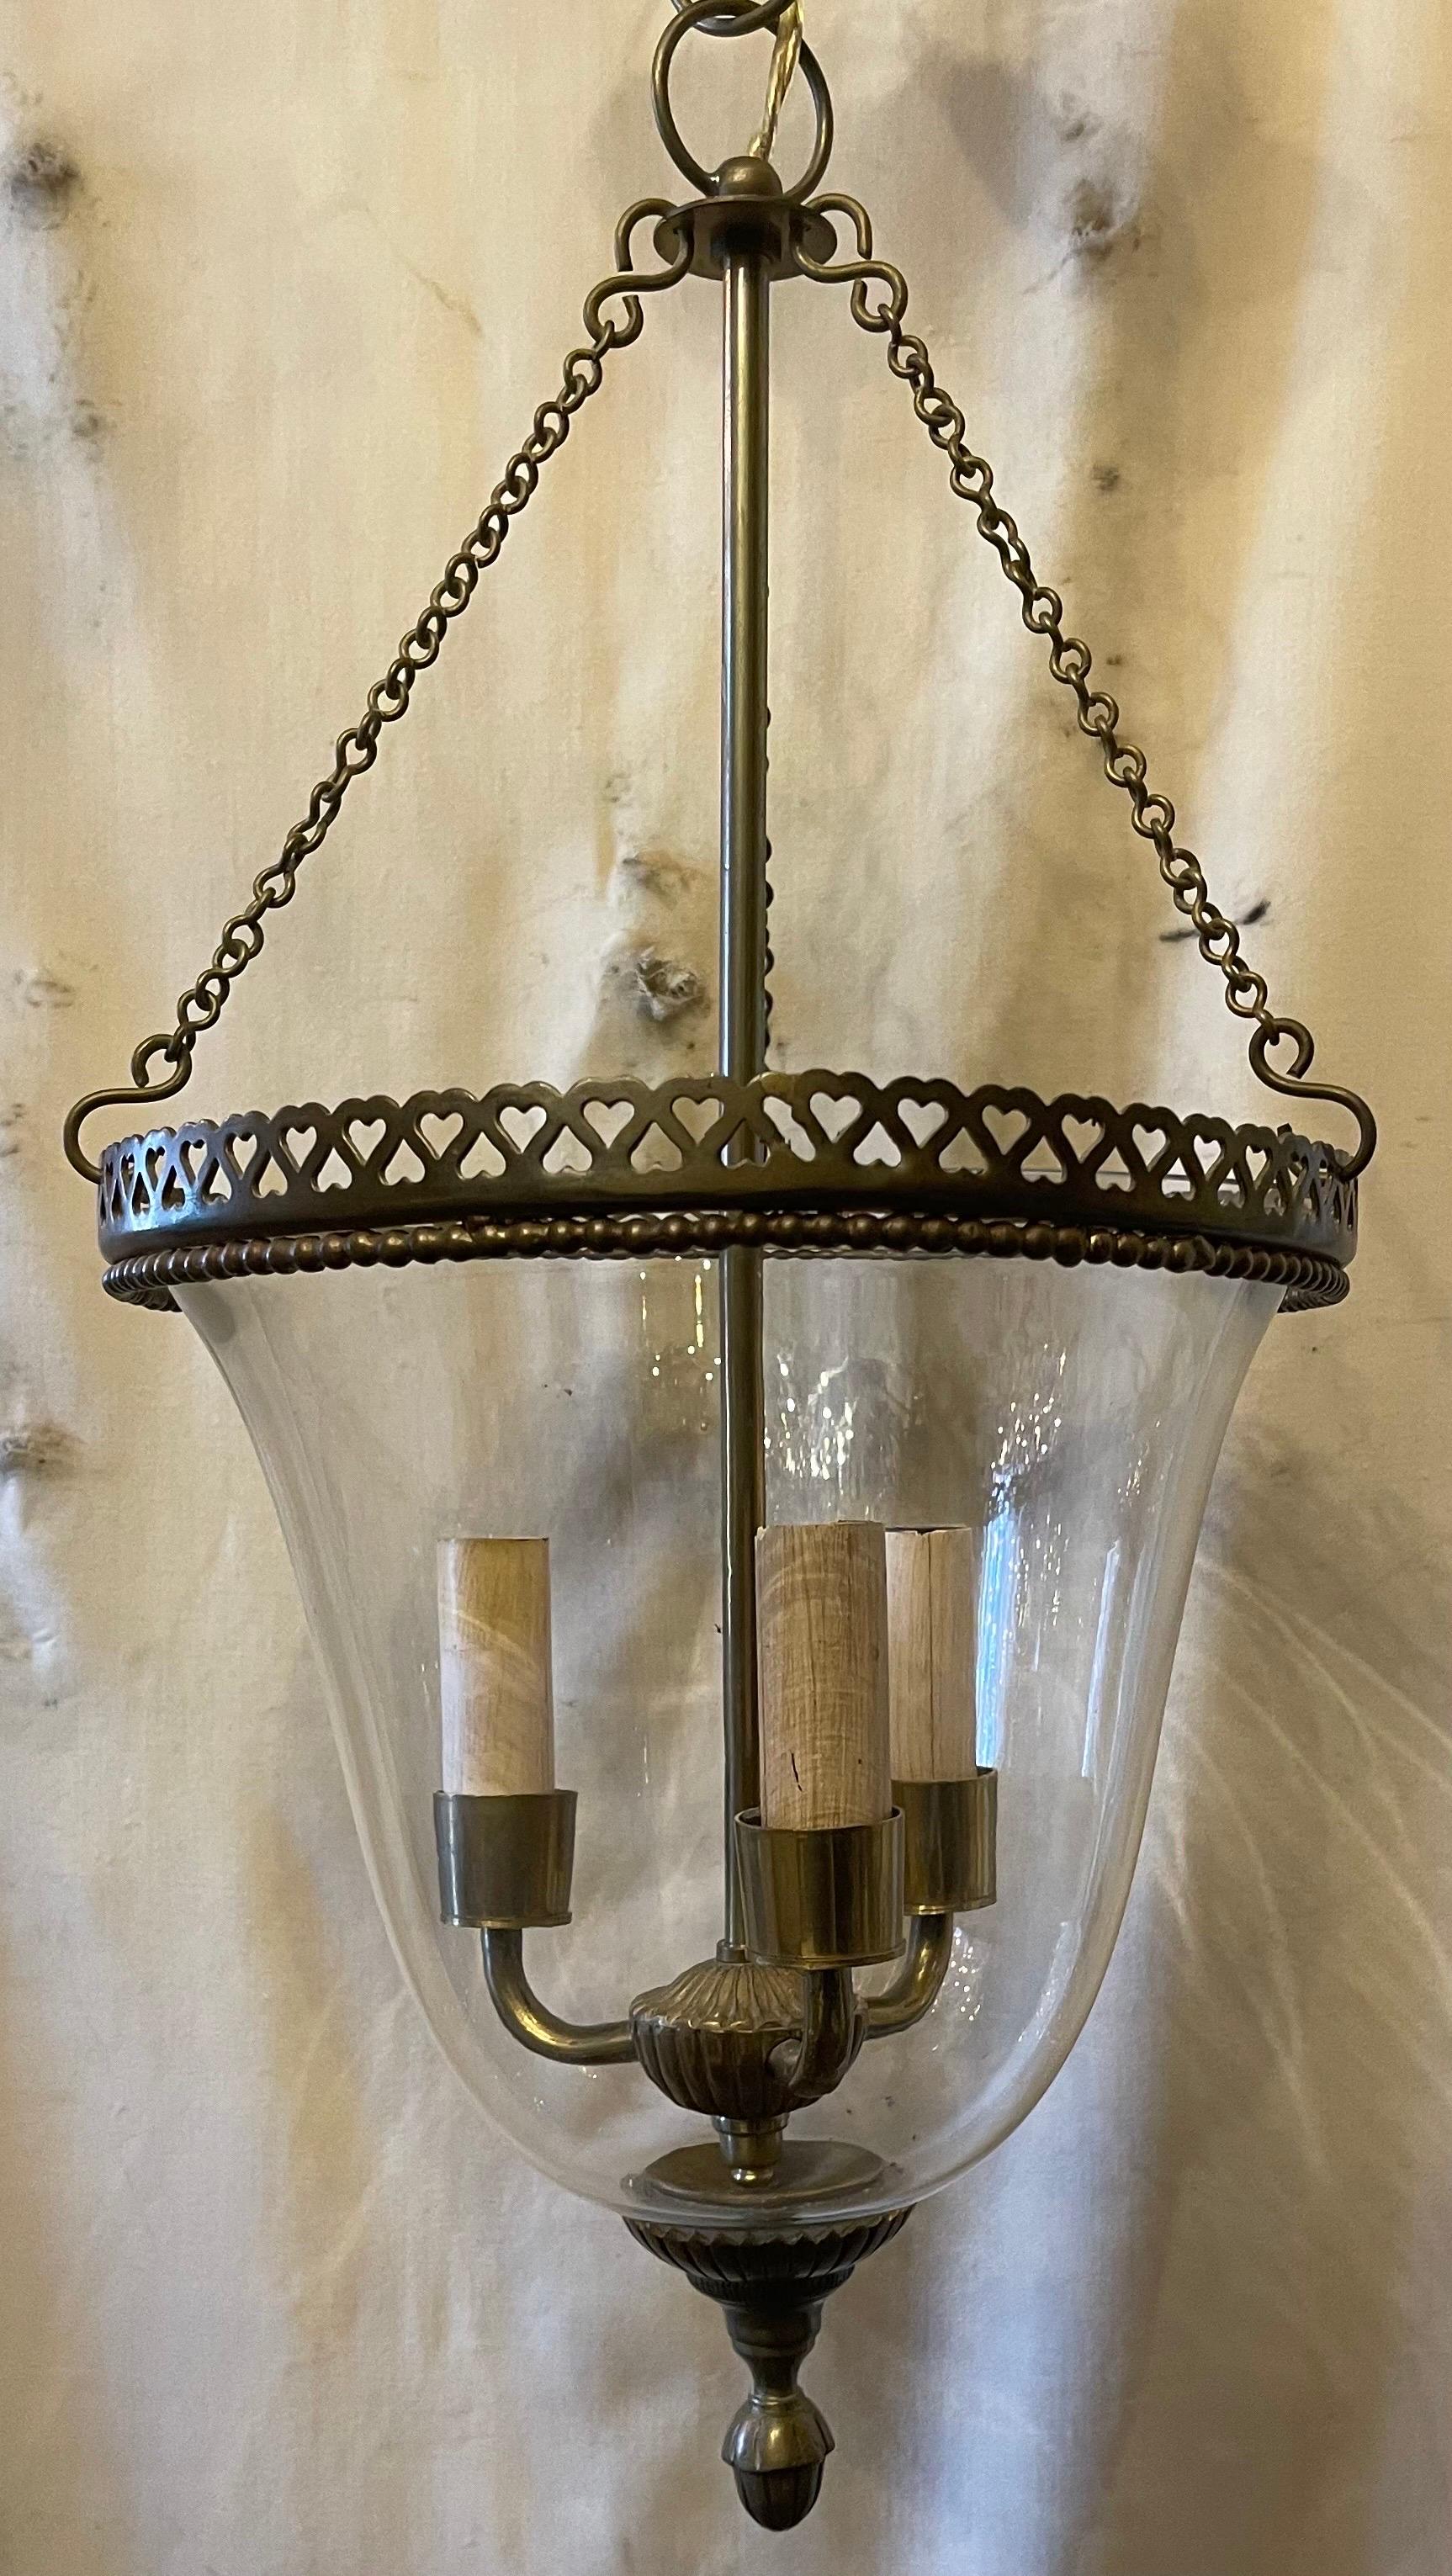 Eine wunderbare Vaughan-Design-Stil Beleuchtung Bronze durchbrochene offene Herz Galerie Glas Glocke Glas Laterne in der neoklassischen Stil, begleitet von Kette Baldachin und Montage-Hardware.
Ausgestattet mit 3 Kandelaber-Fassungen.
 